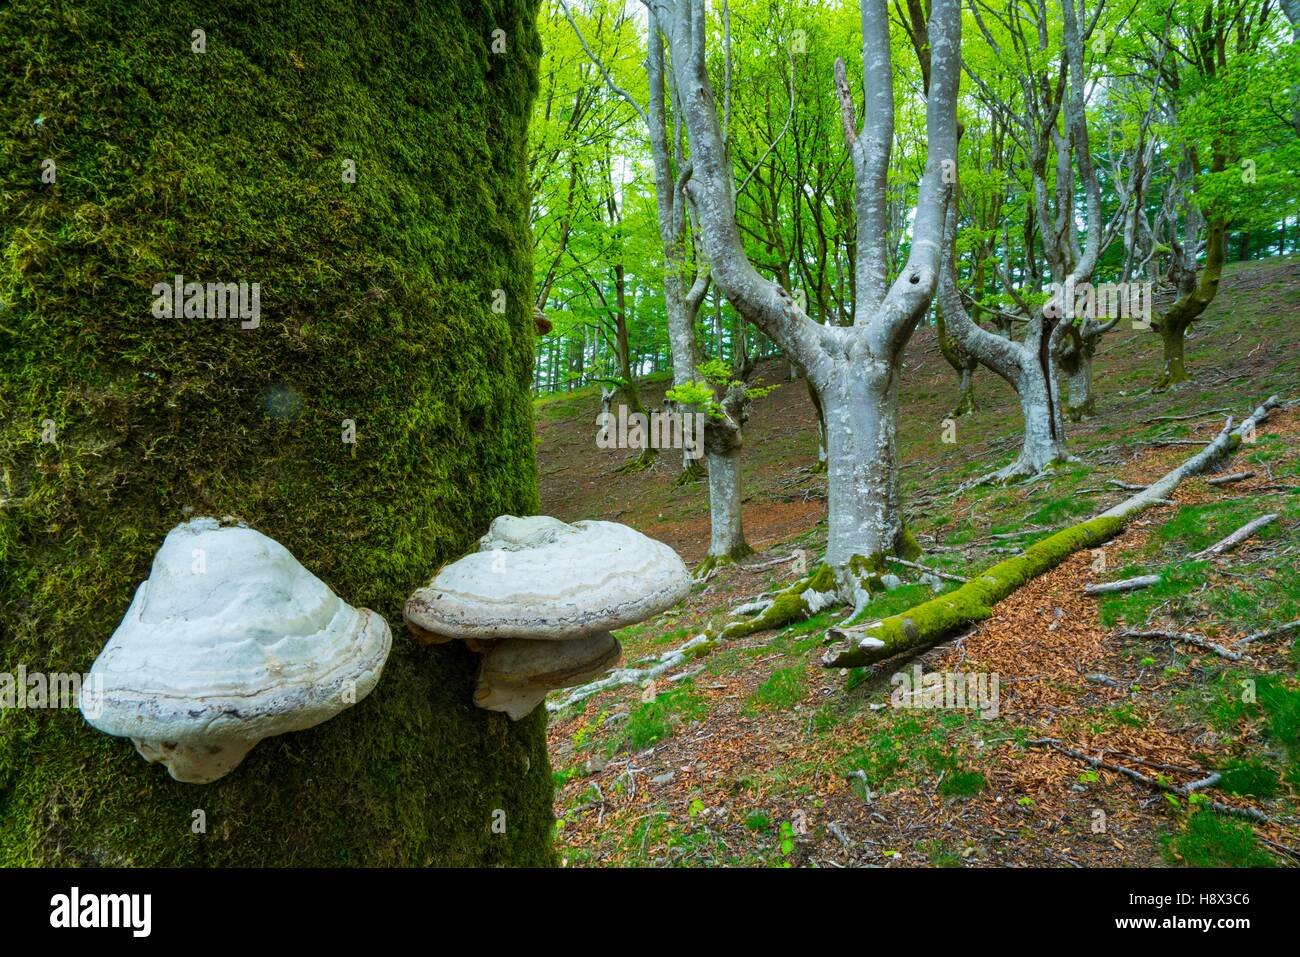 Beech forest, Oianleku, Peñas de Aia Natural Park, Gipuzkoa, Basque Country, Spain, Europe Stock Photo